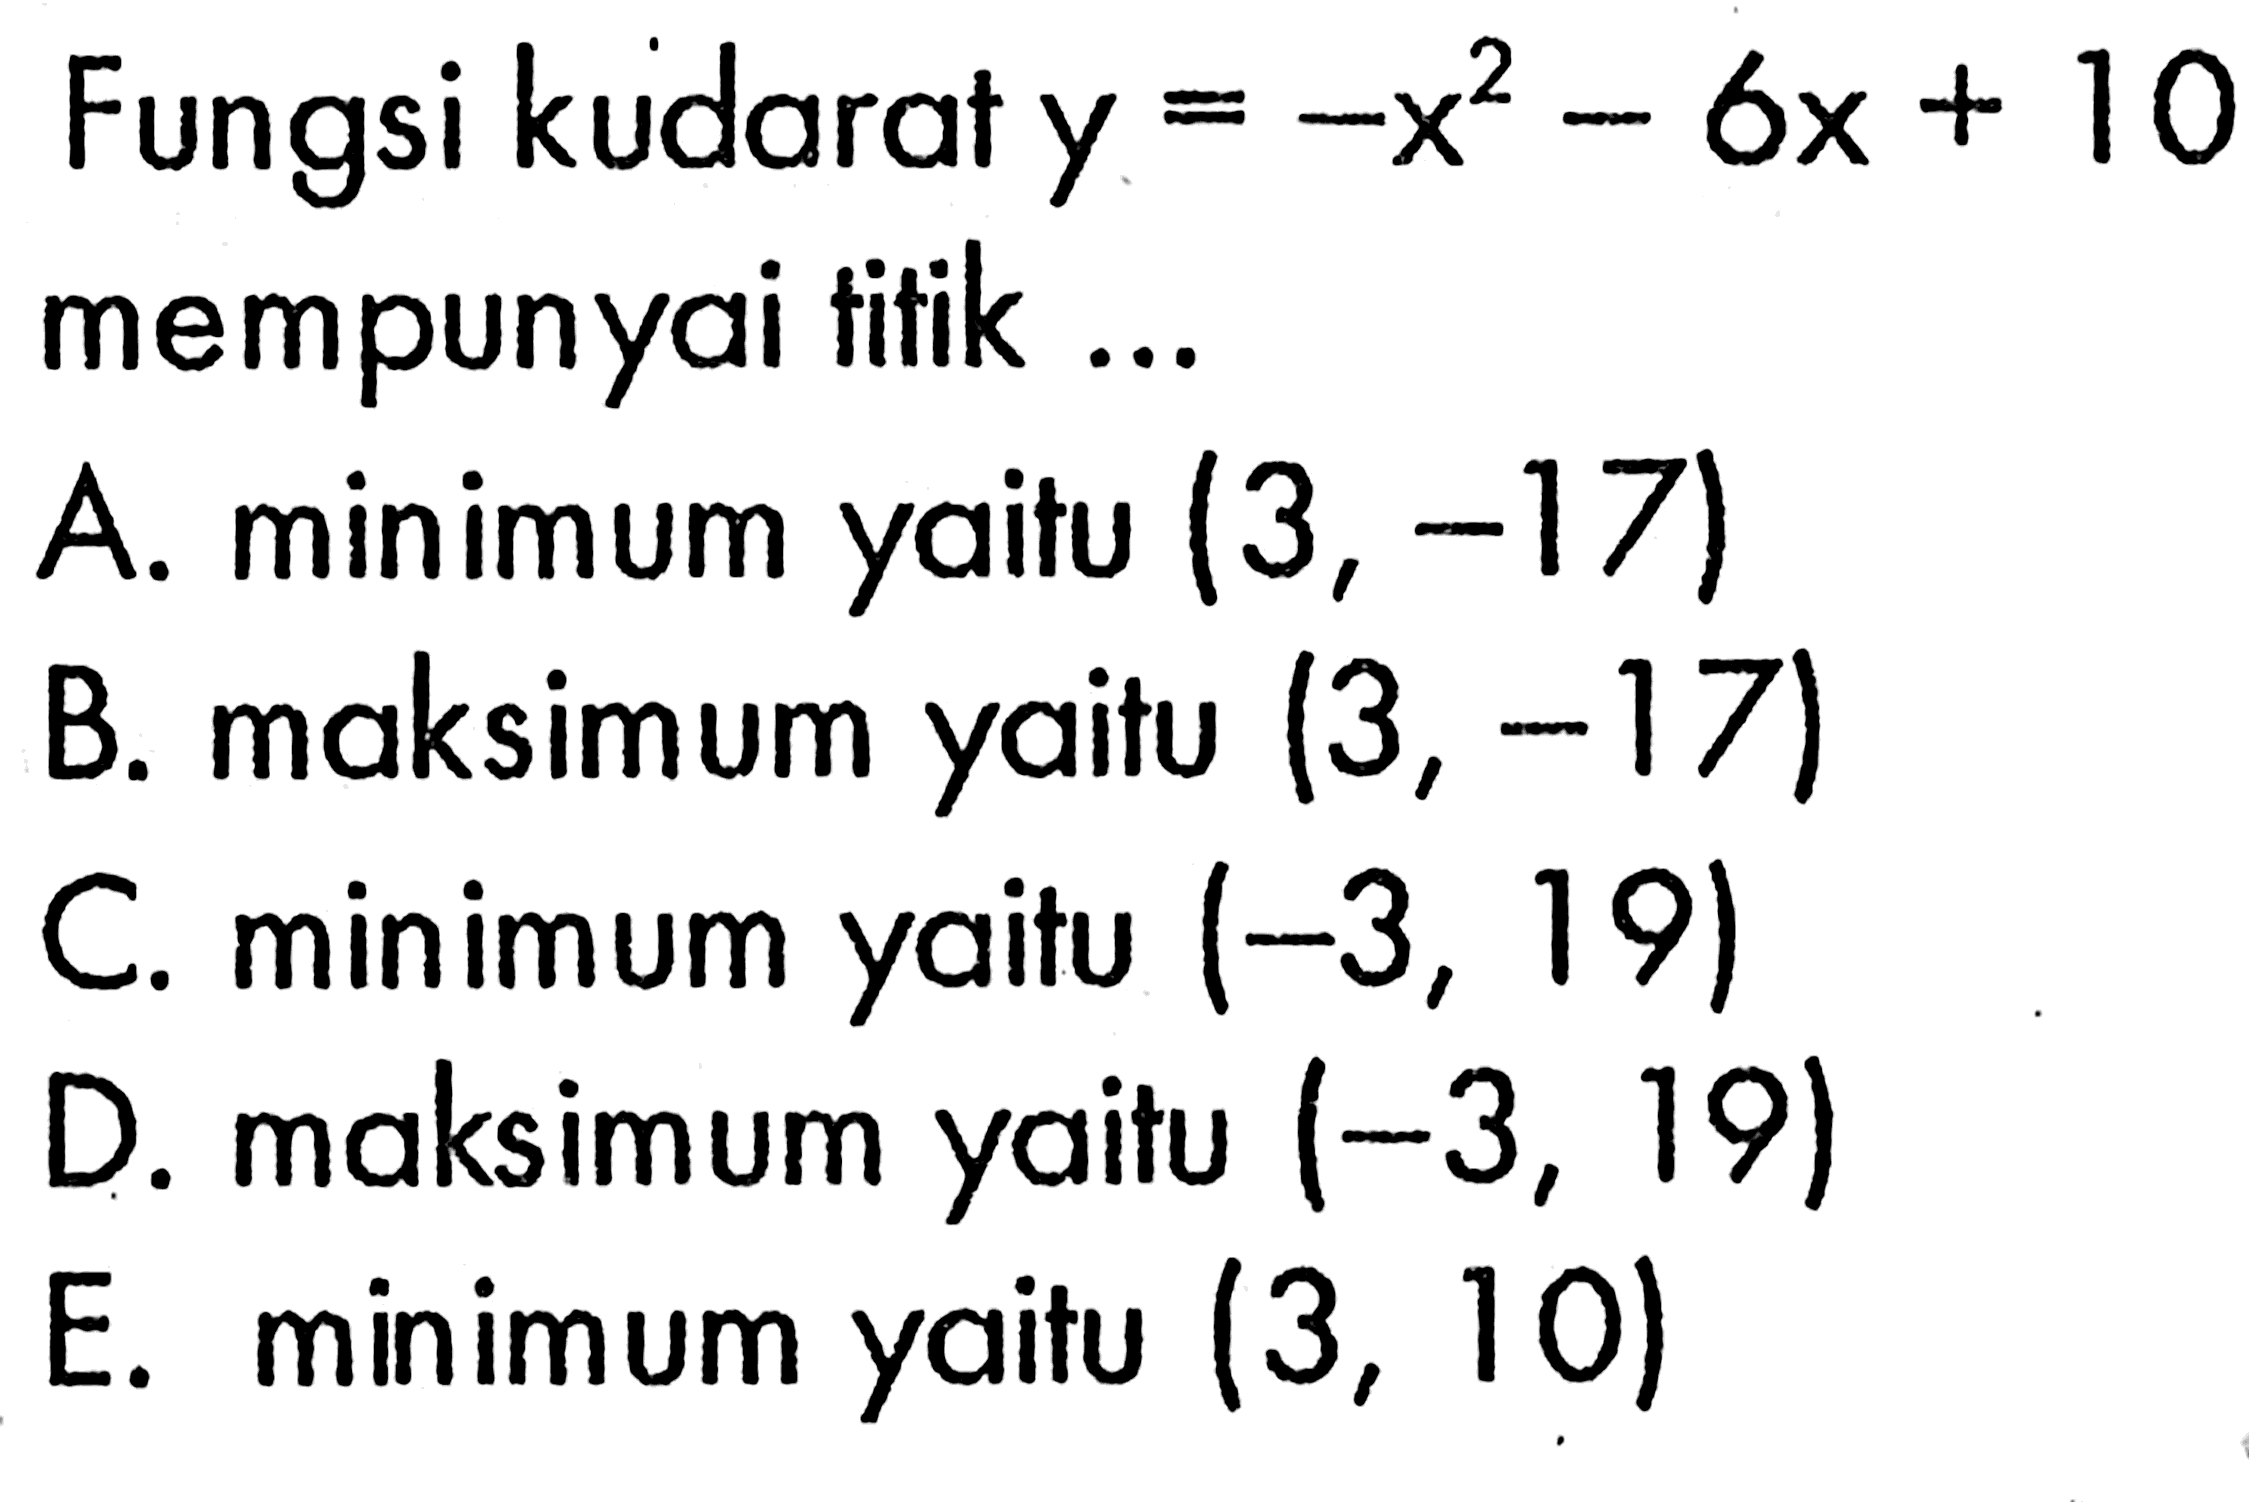 Fungsi kudarat y=-x^2-6x+10 mempunyai titik ...A. minimum yaitu  (3,-17) B. maksimum yaitu  (3,-17) C. minimum yaitu  (-3,19) D. maksimum yaitu  (-3,19) E. minimum yaitu  (3,10) 